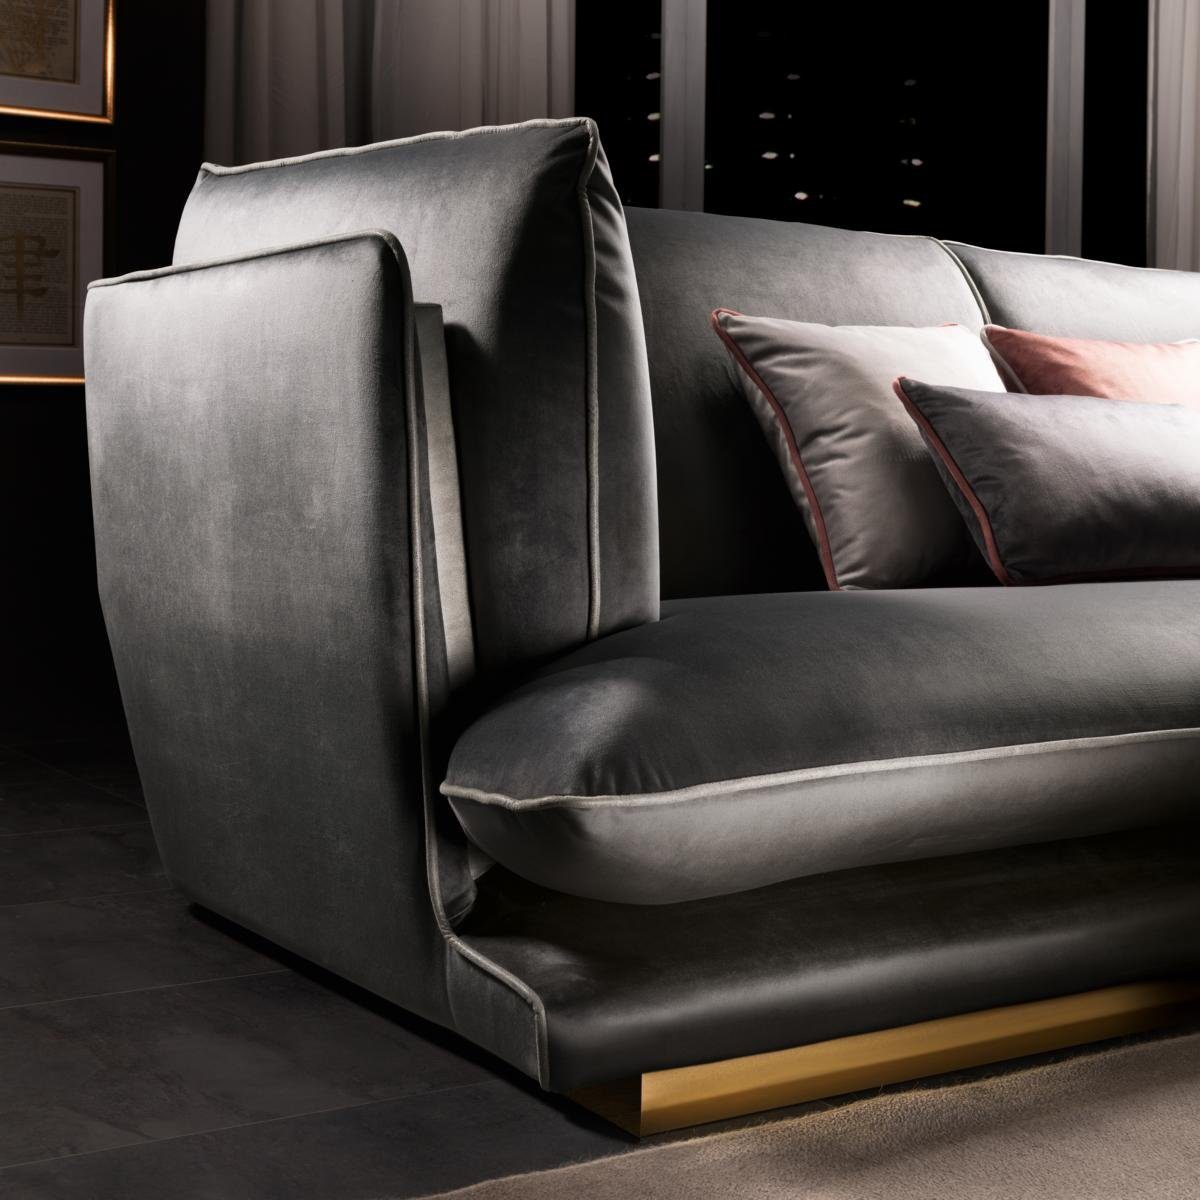 JVmoebel Ecksofa Schwarzes Sofa Luxus Wohnlandschaft in L-Form Made Europe Arredoclassic, Couch